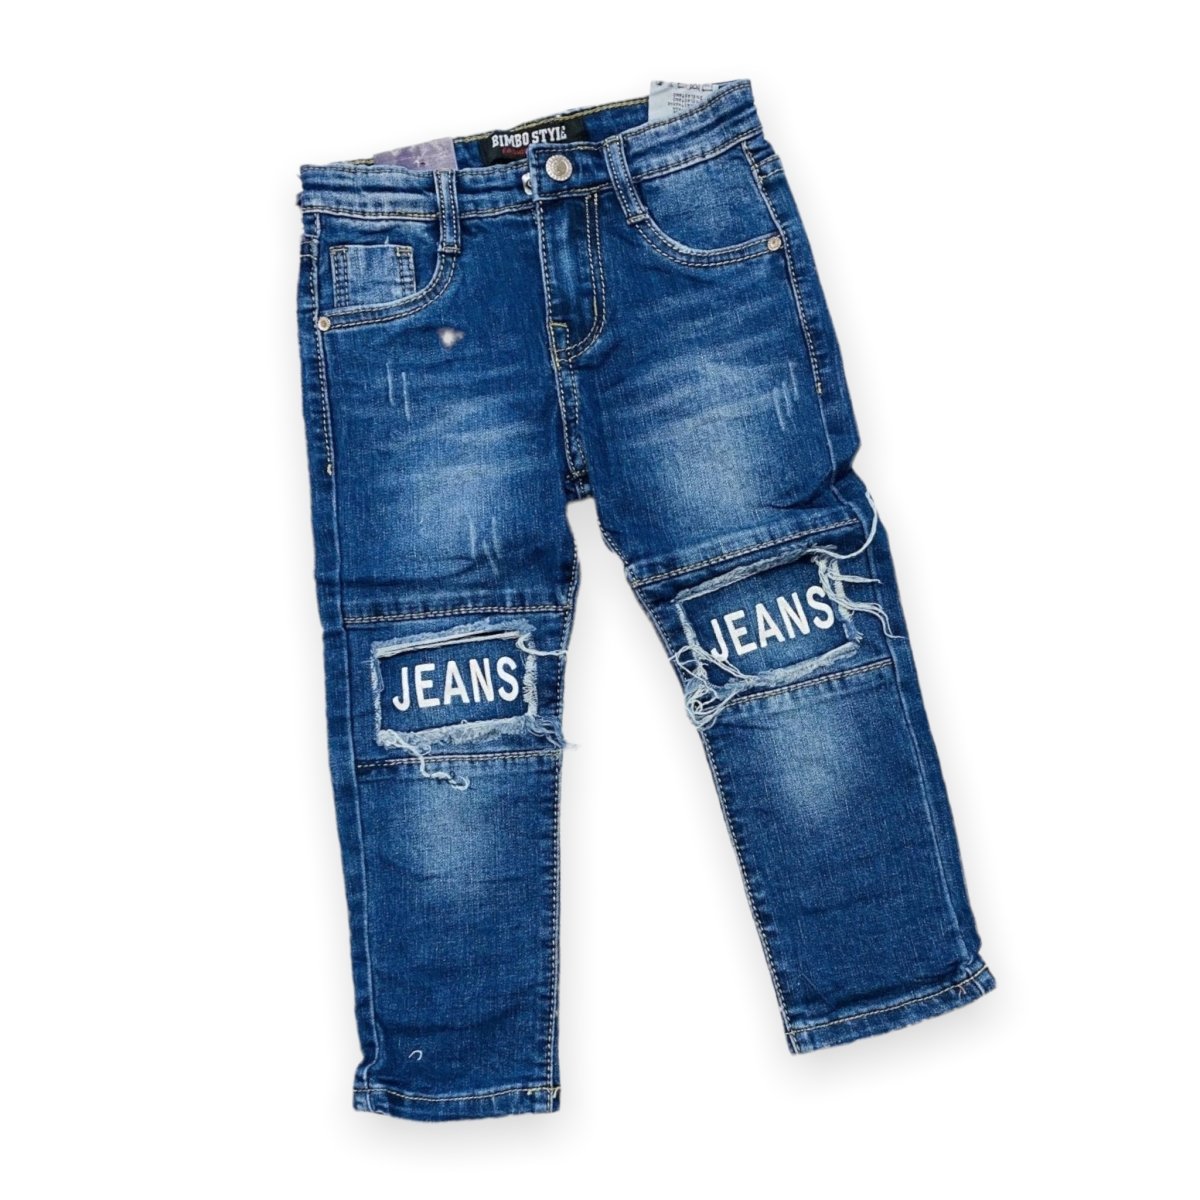 Jeans Neonato - Mstore016 - Jeans Neonato - Mstore016